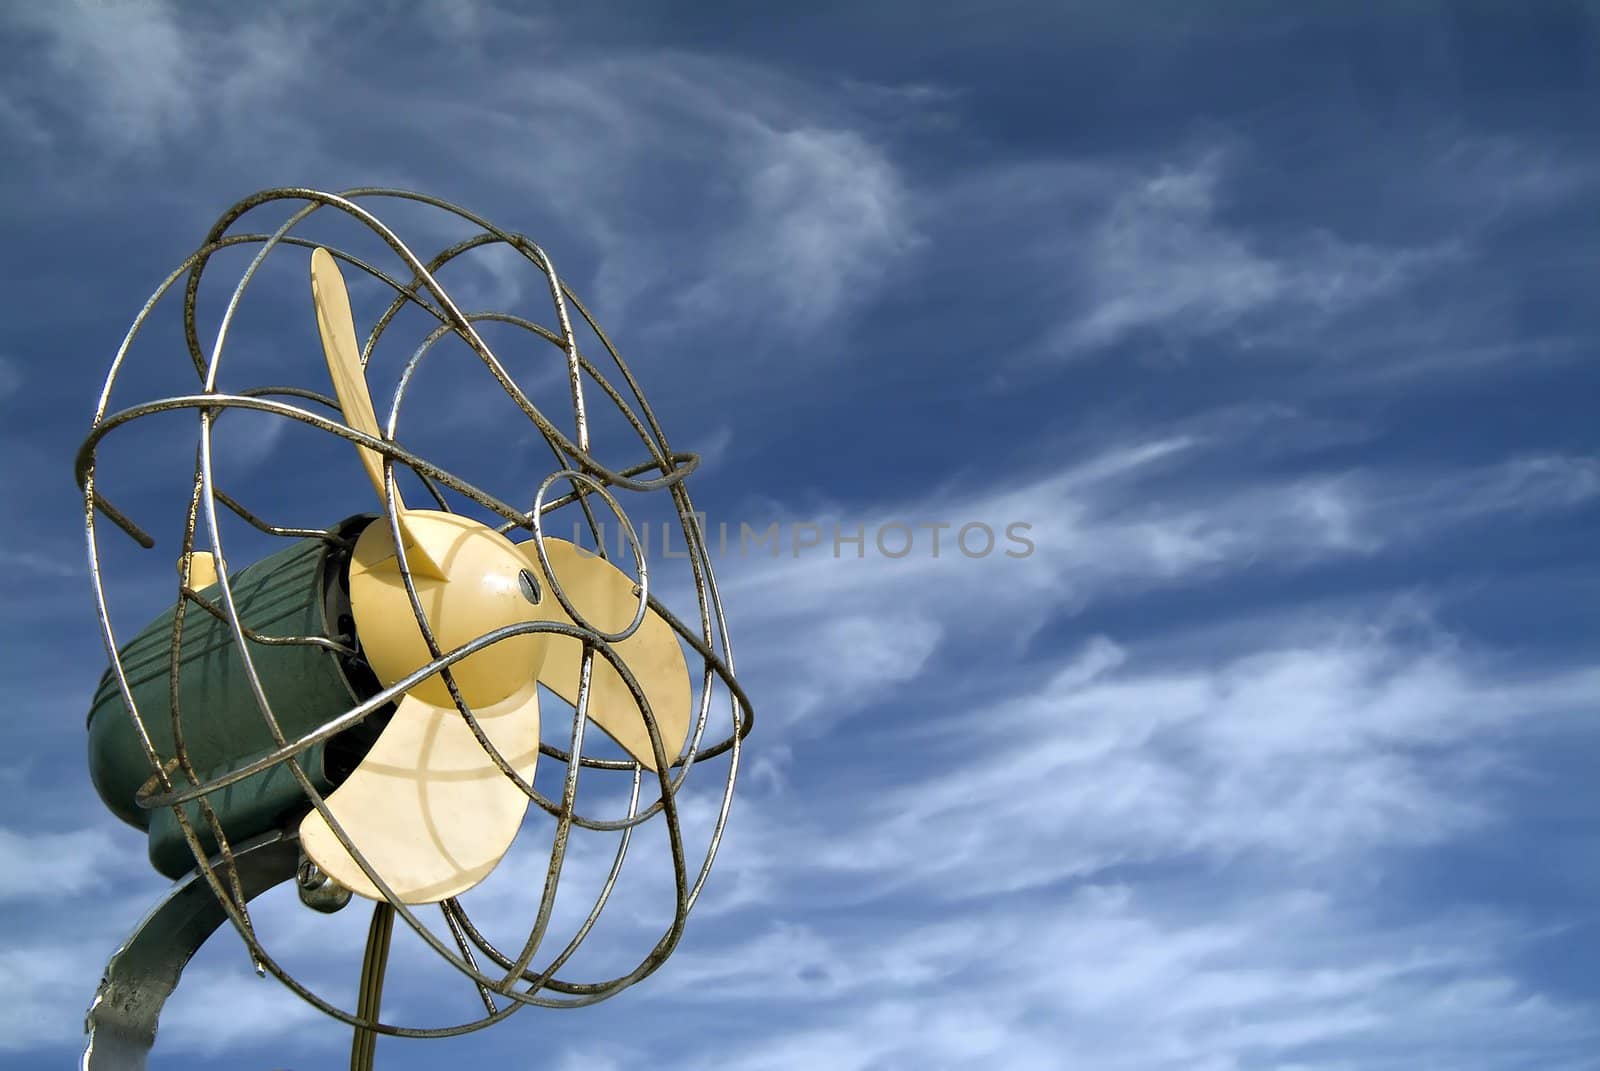 retro ventilator agaist blue sky with cirrus clouds